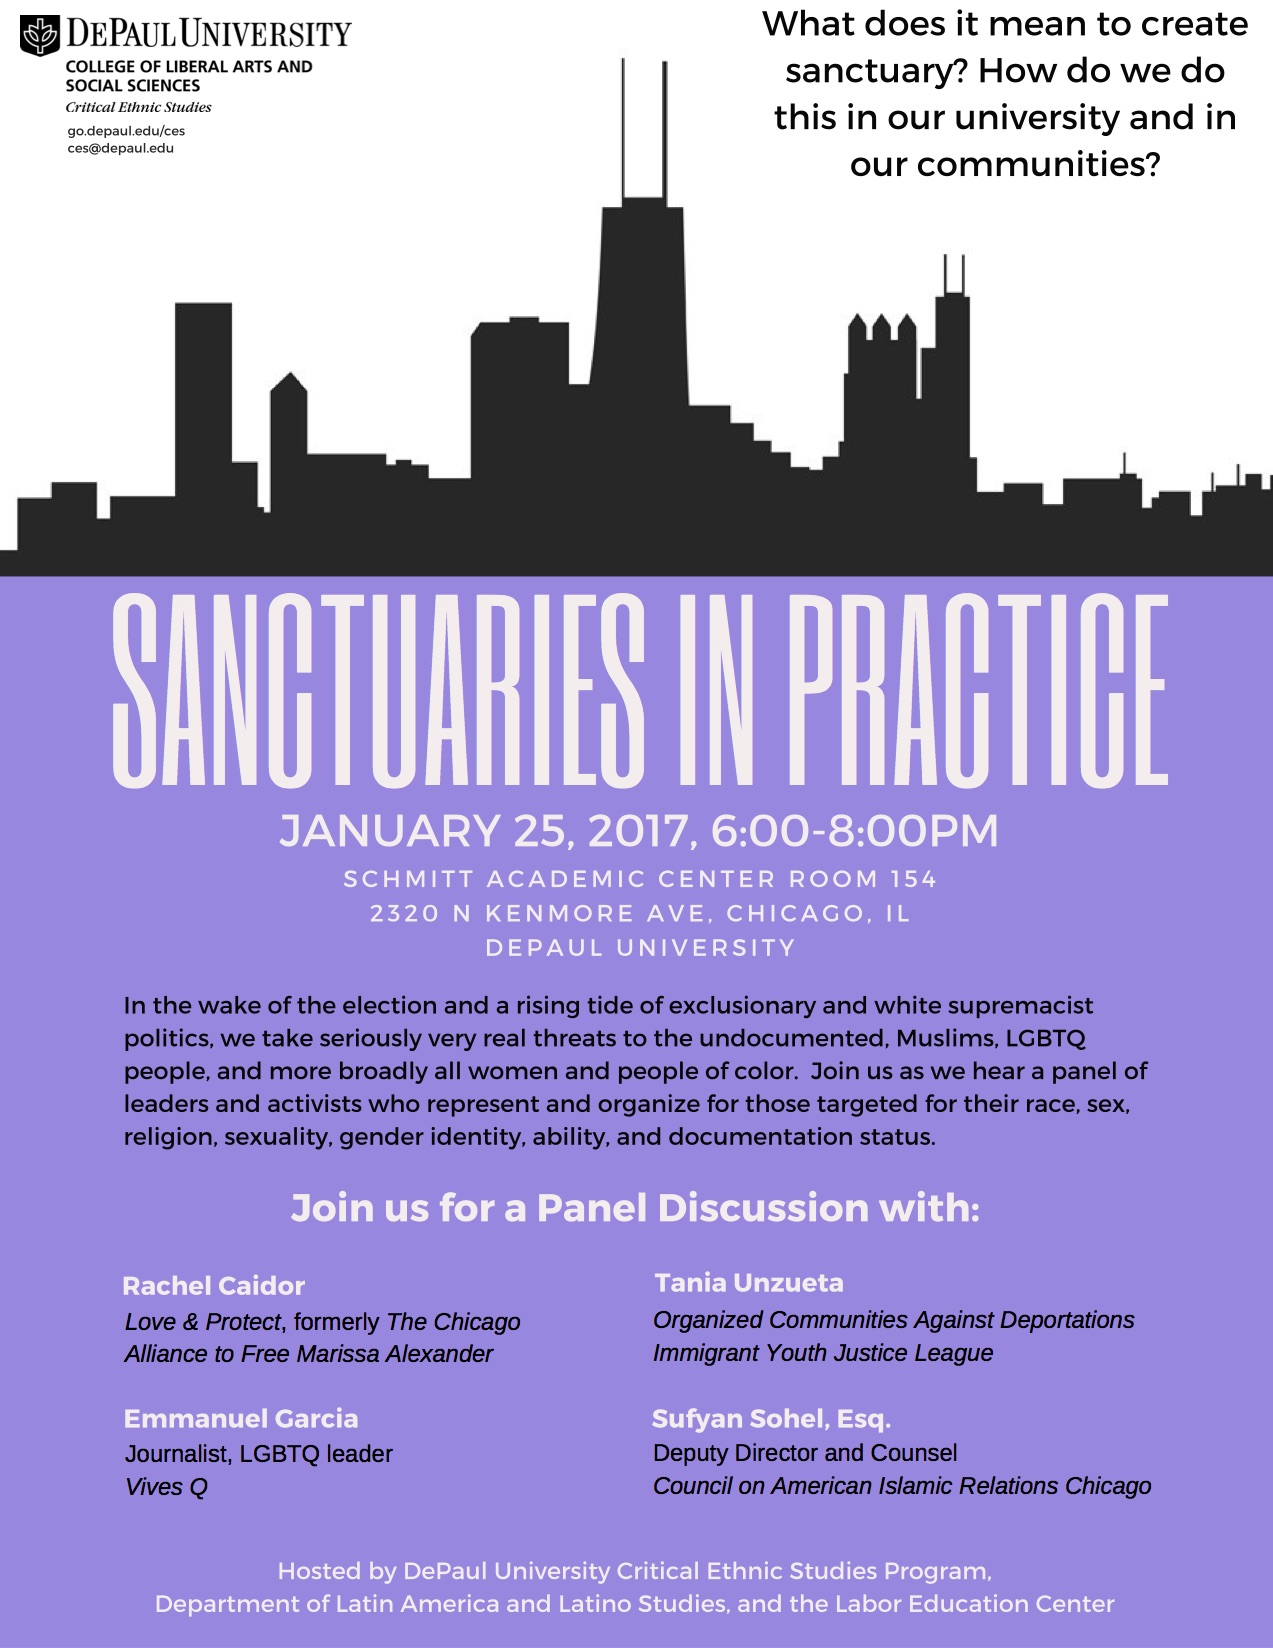 Sanctuaries in Practice Event Flyer